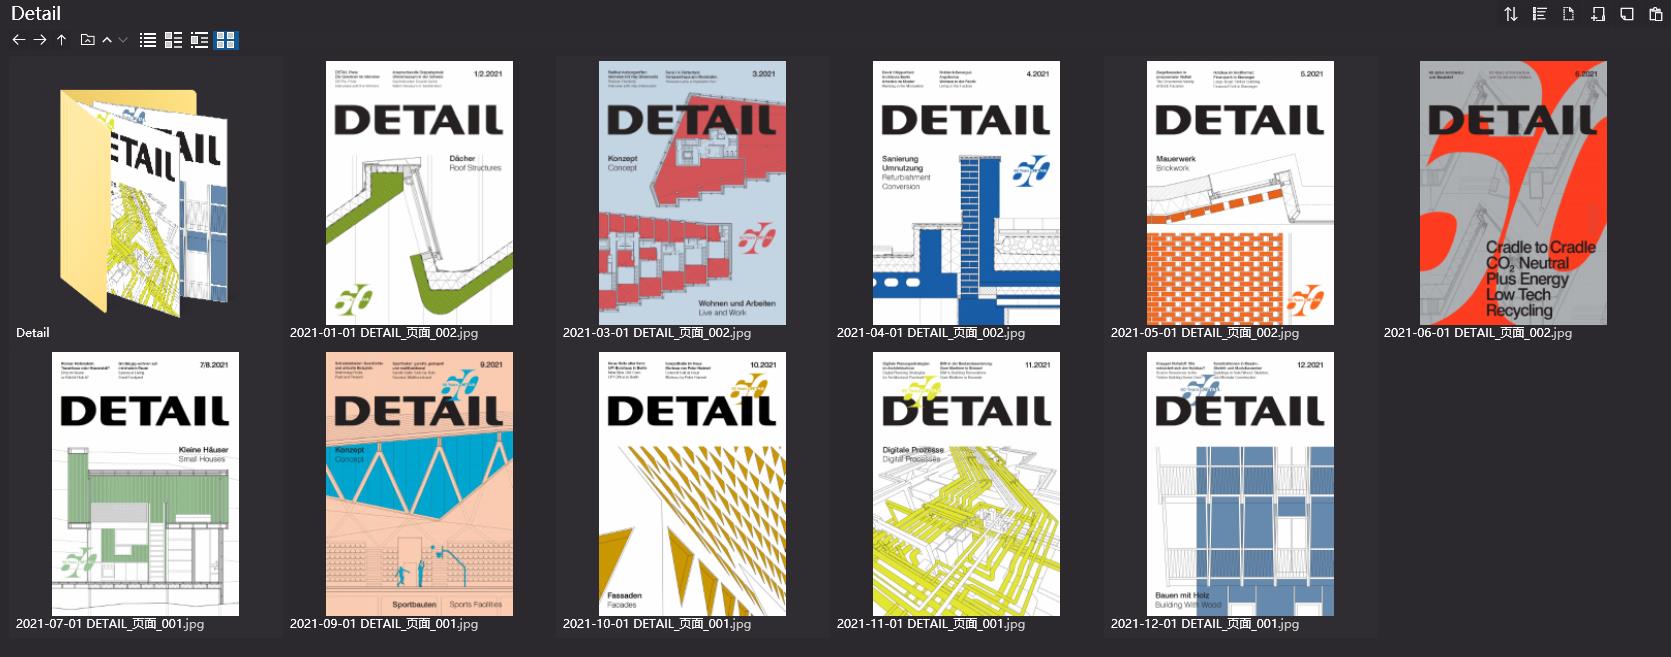 建筑杂志DETAIL,建筑细部、工艺杂志DETAIL,建筑设计杂志,DETAIL设计杂志,DETAIL设计电子杂志,杂志下载,DETAIL杂志合集